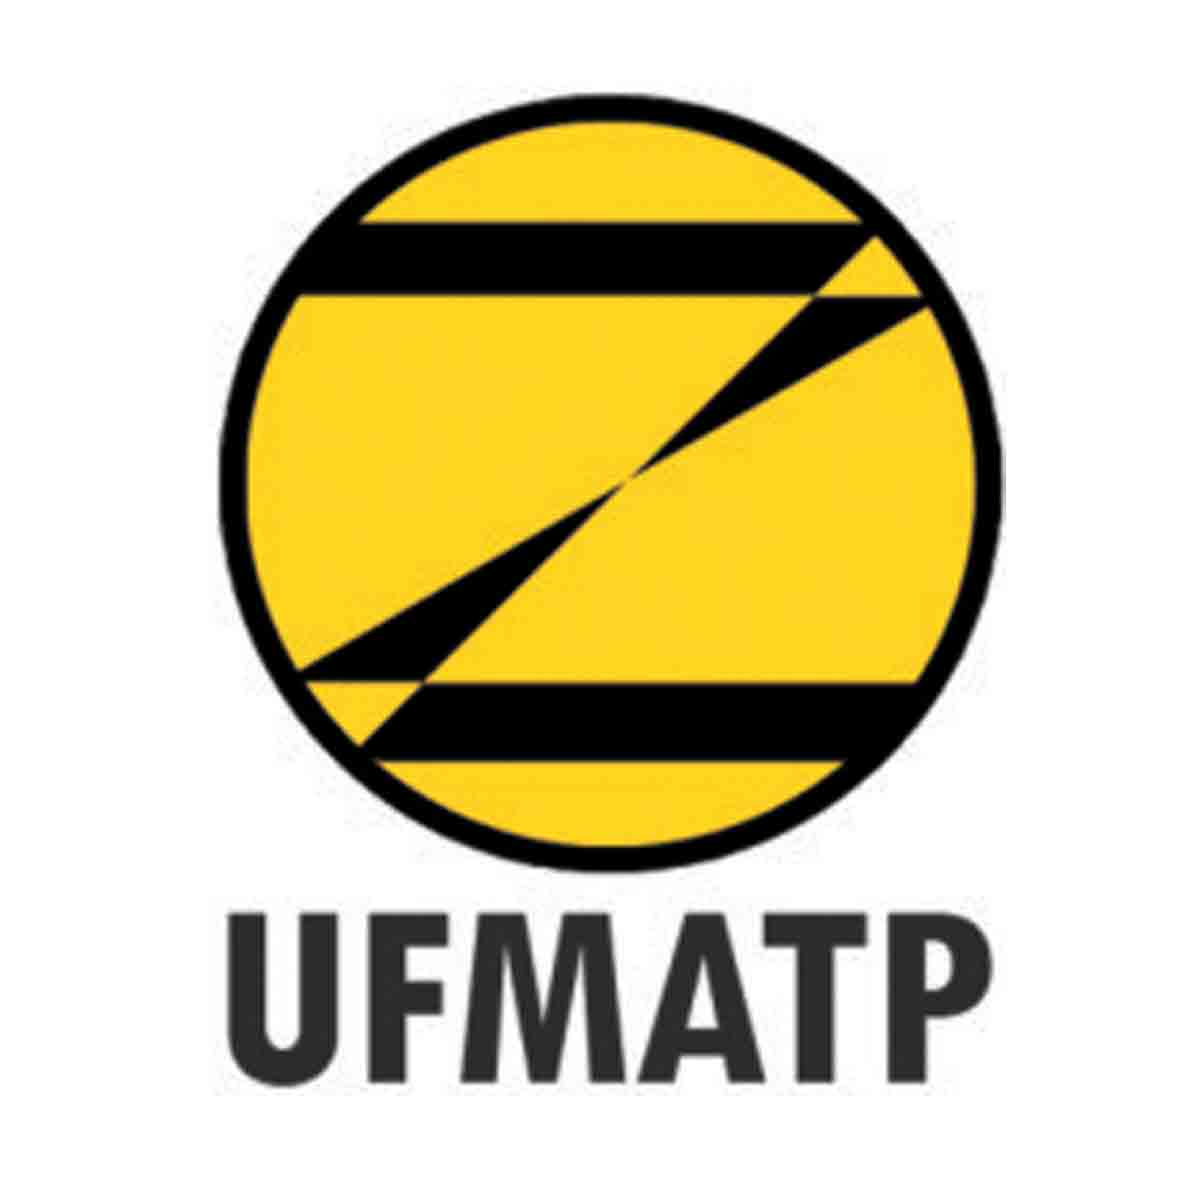 UFMATP